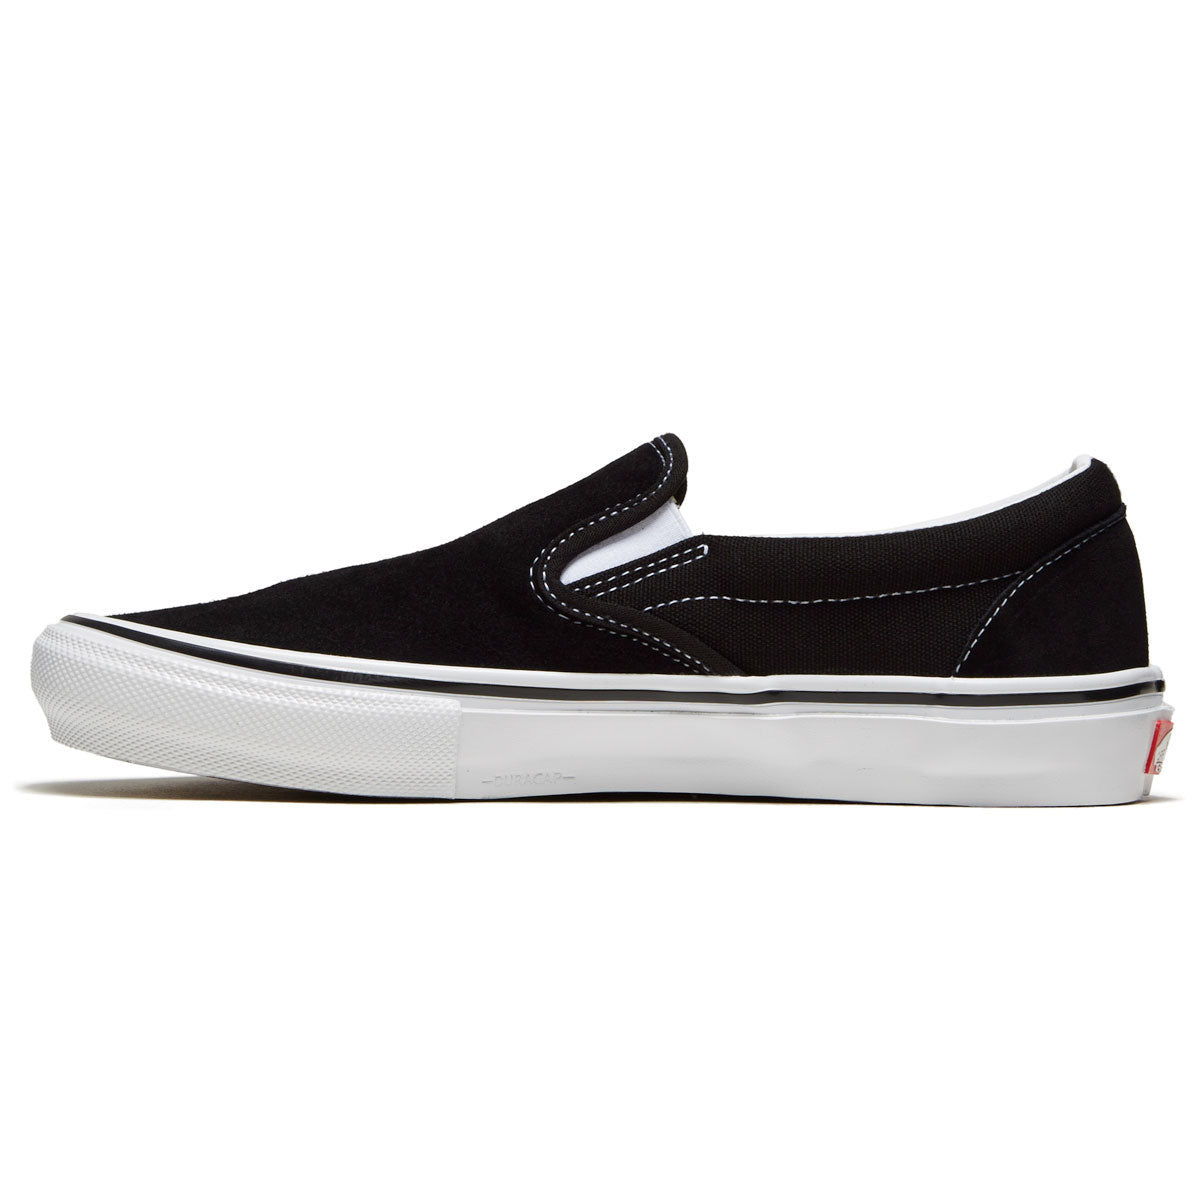 Vans Skate Slip-on Shoes - Black/White image 2